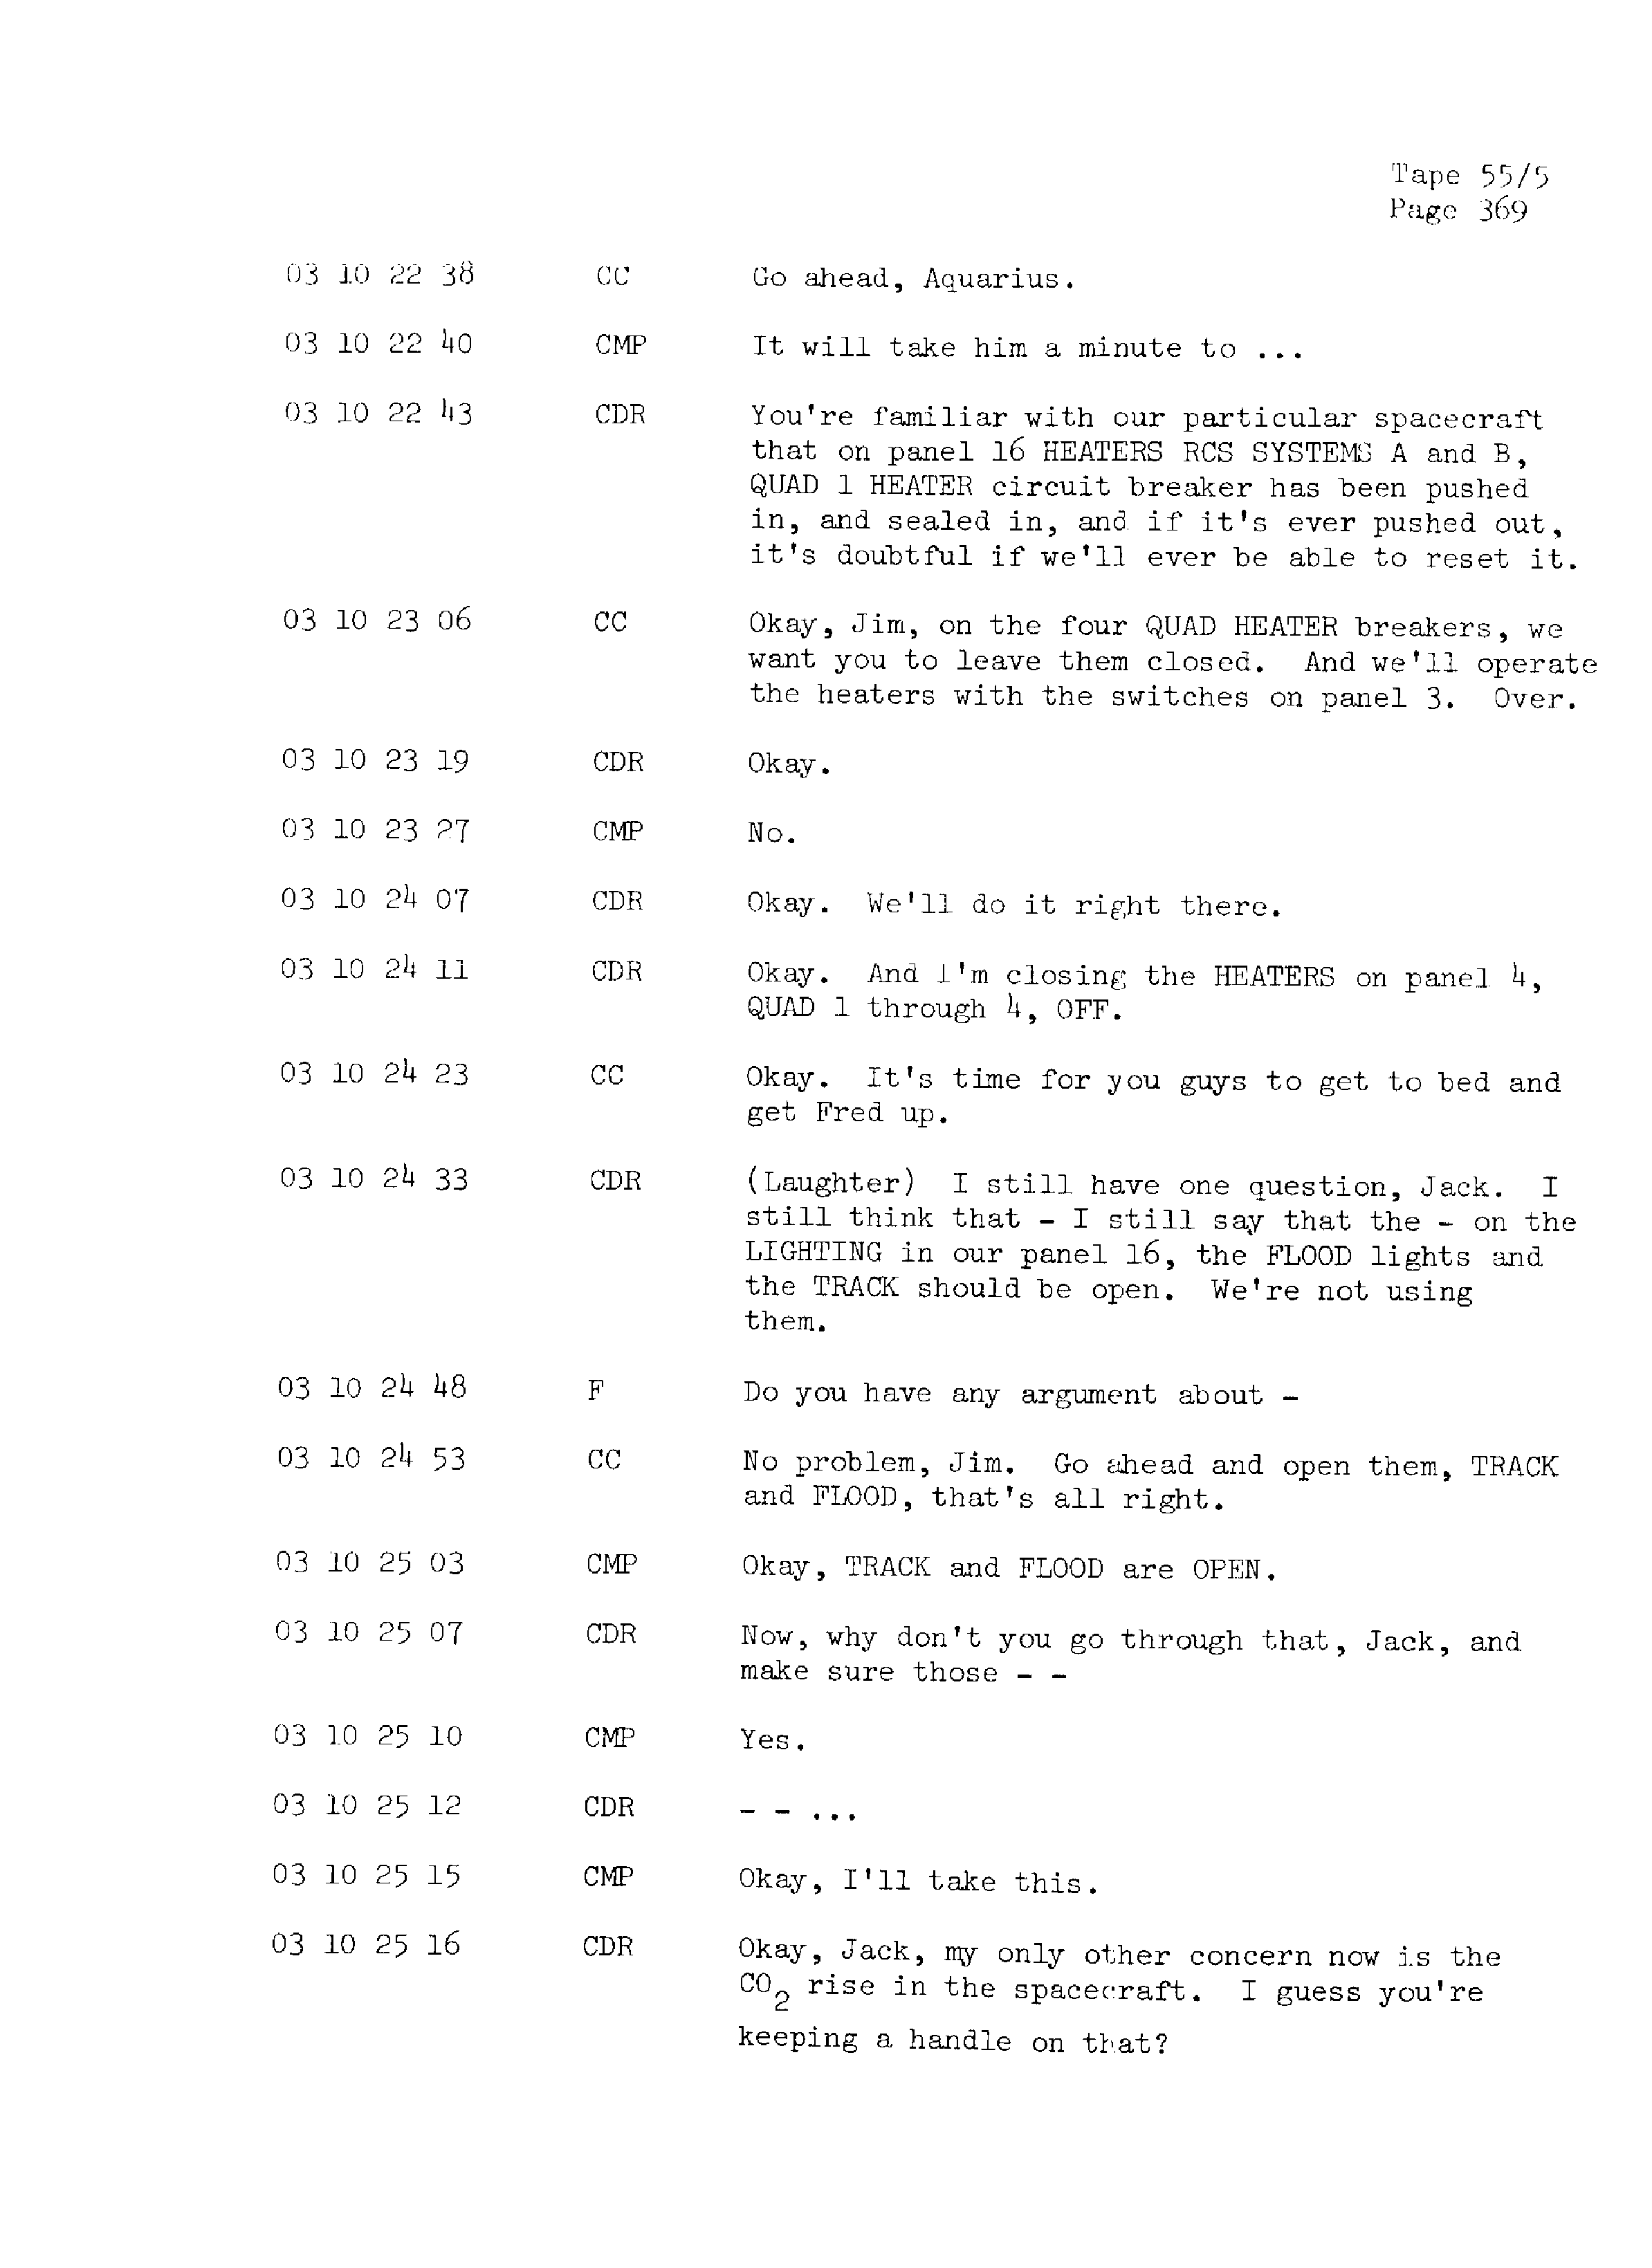 Page 376 of Apollo 13’s original transcript